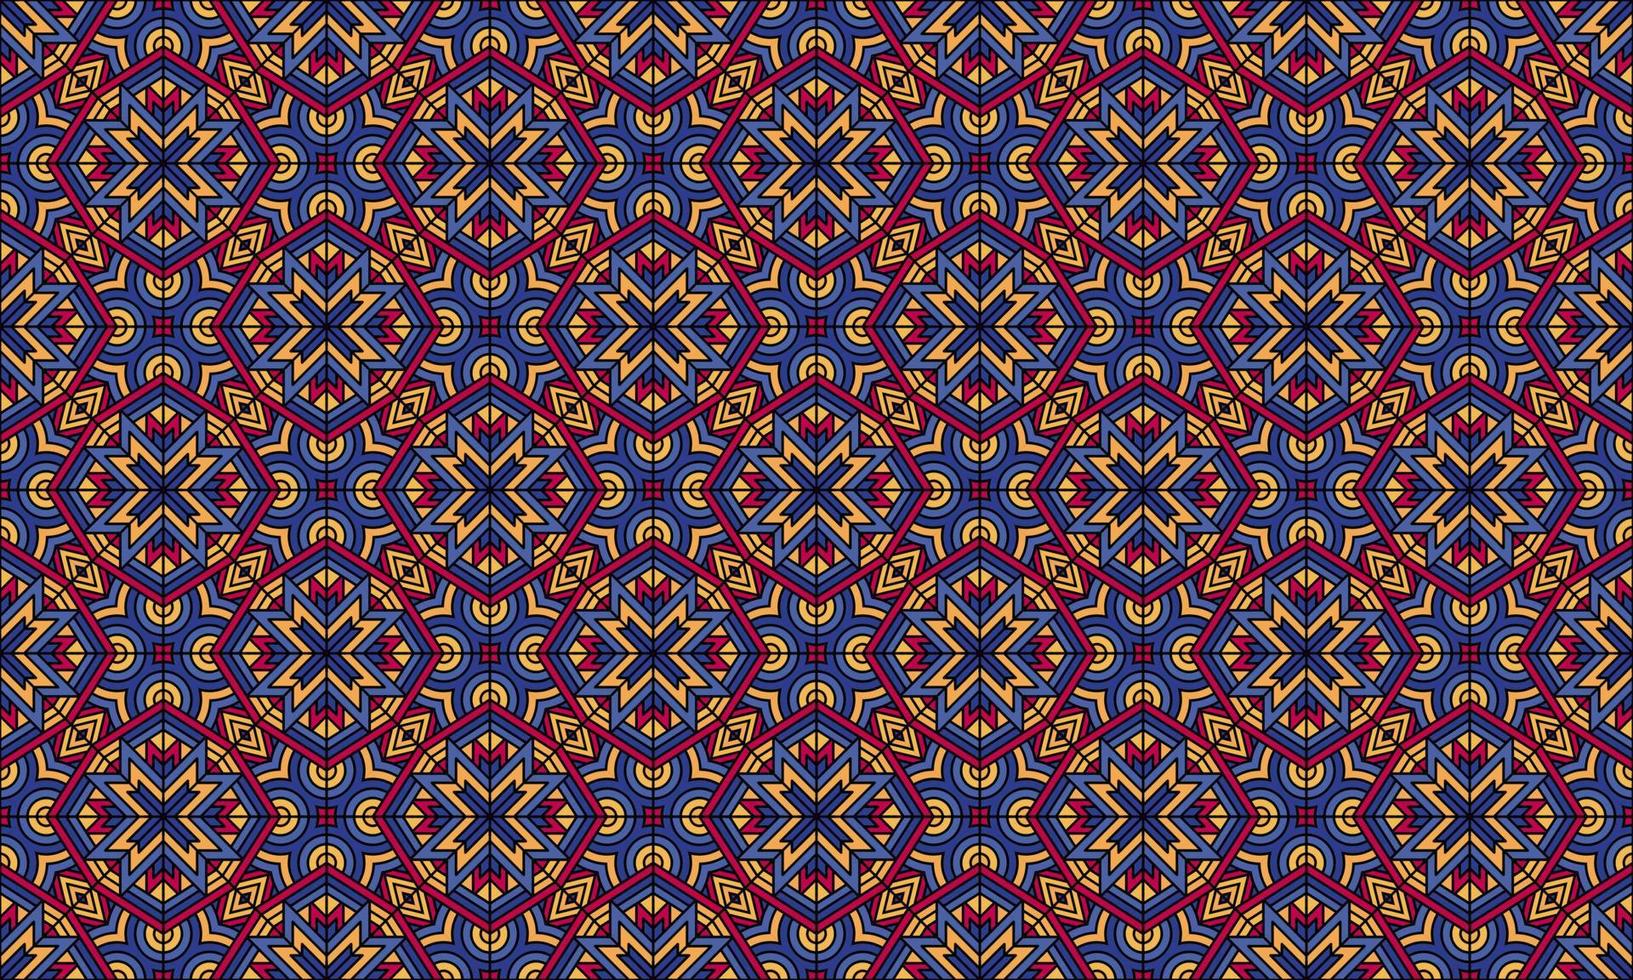 fondo de patrón étnico batik moderno elegante vector